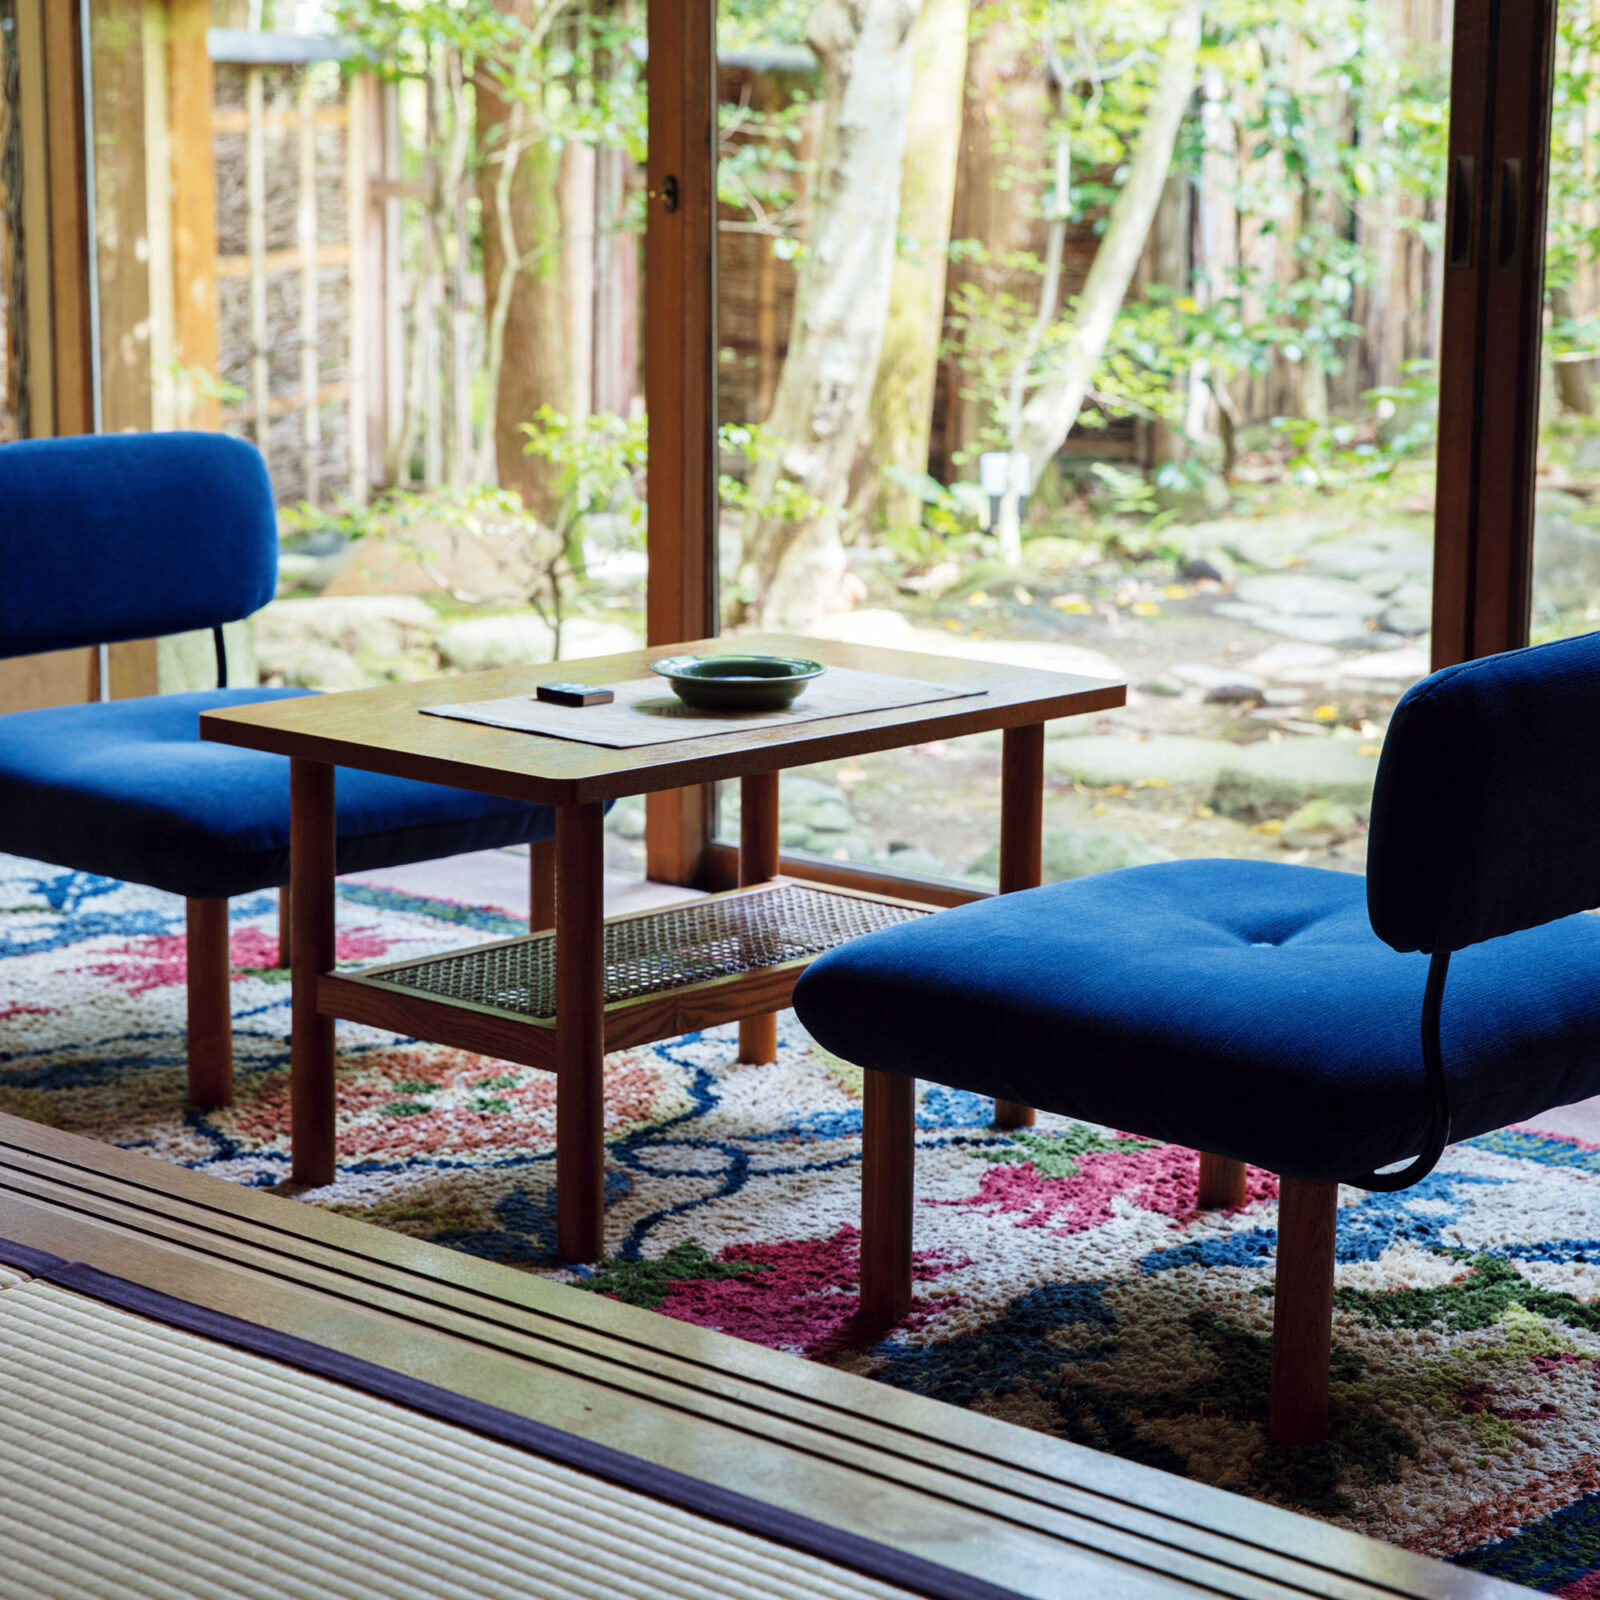 佐賀の伝統工芸品、鍋島緞通が敷かれている特別室〈衆芳亭〉の広縁